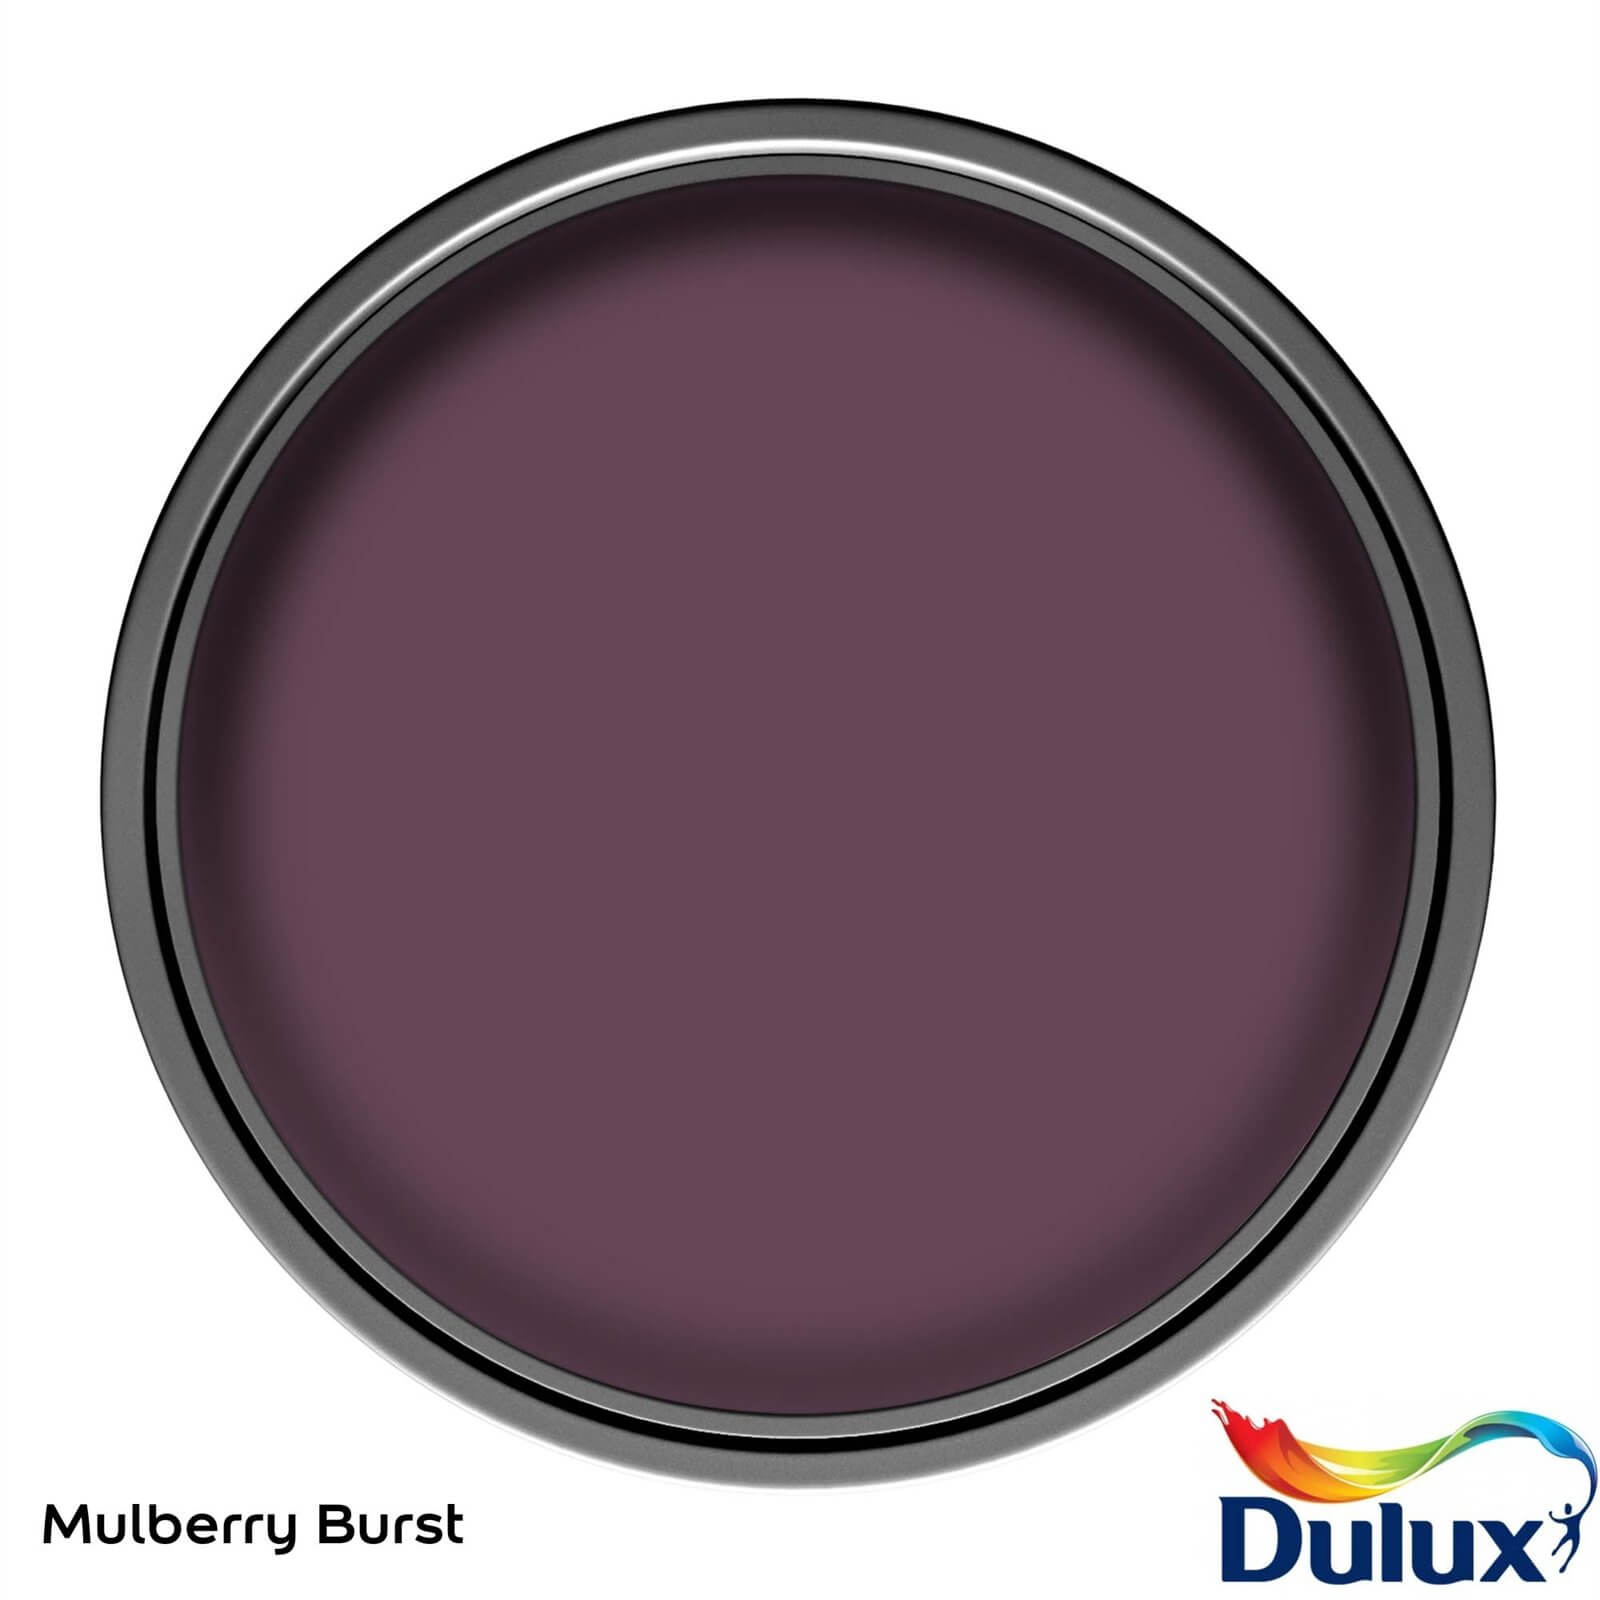 Dulux Once Mulberry Burst - Matt Paint - 2.5L